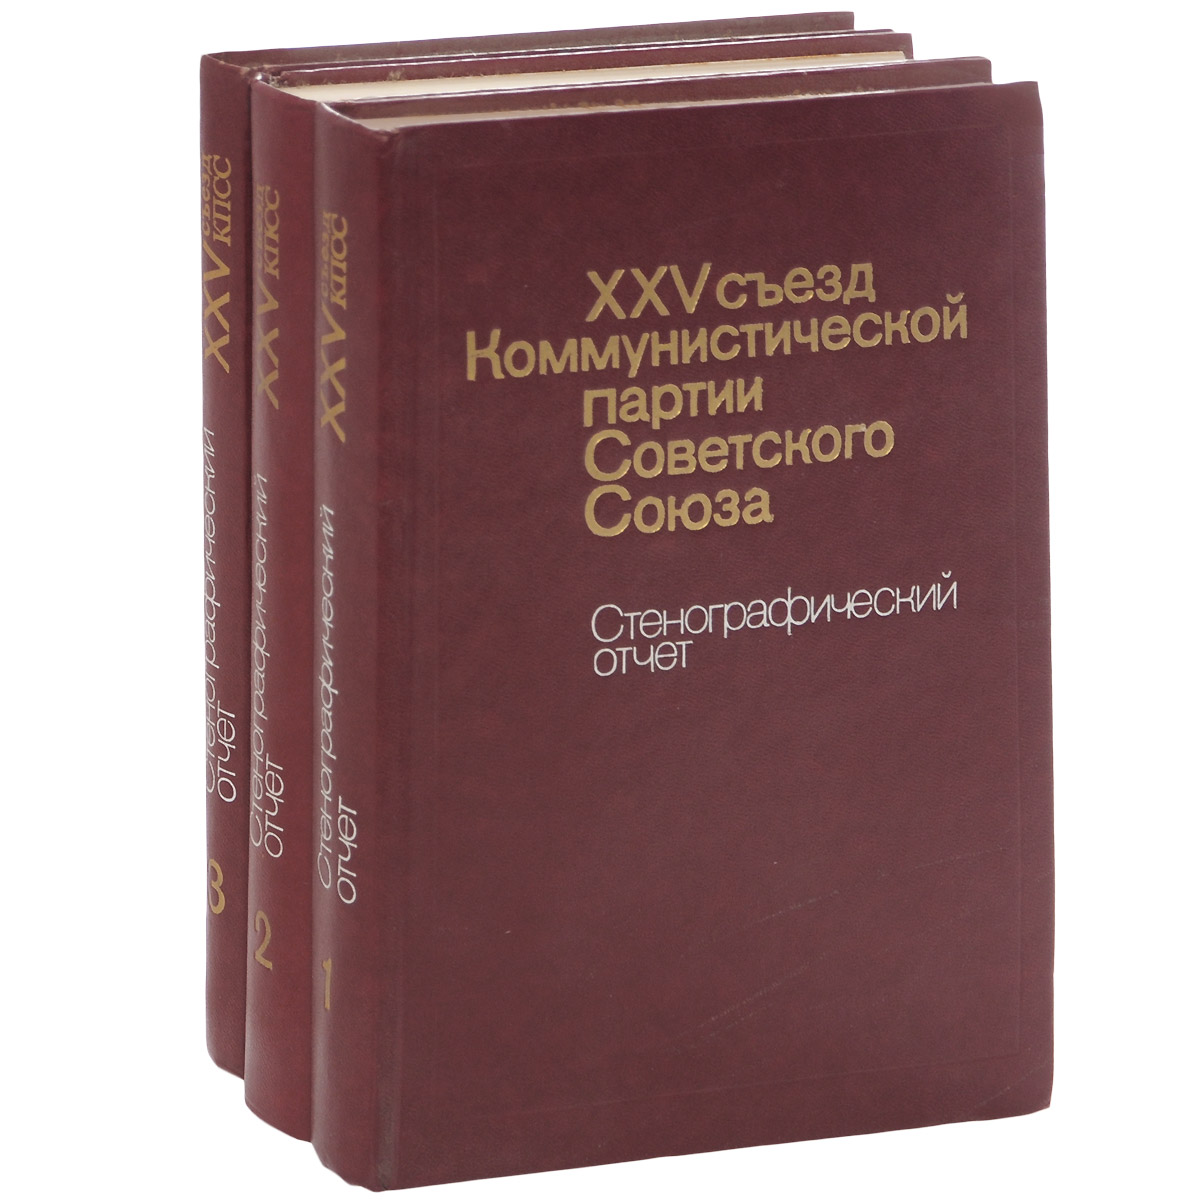 XXV съезд Коммунистической партии Советского Союза. Стенографический отчет (комплект из 3 книг)